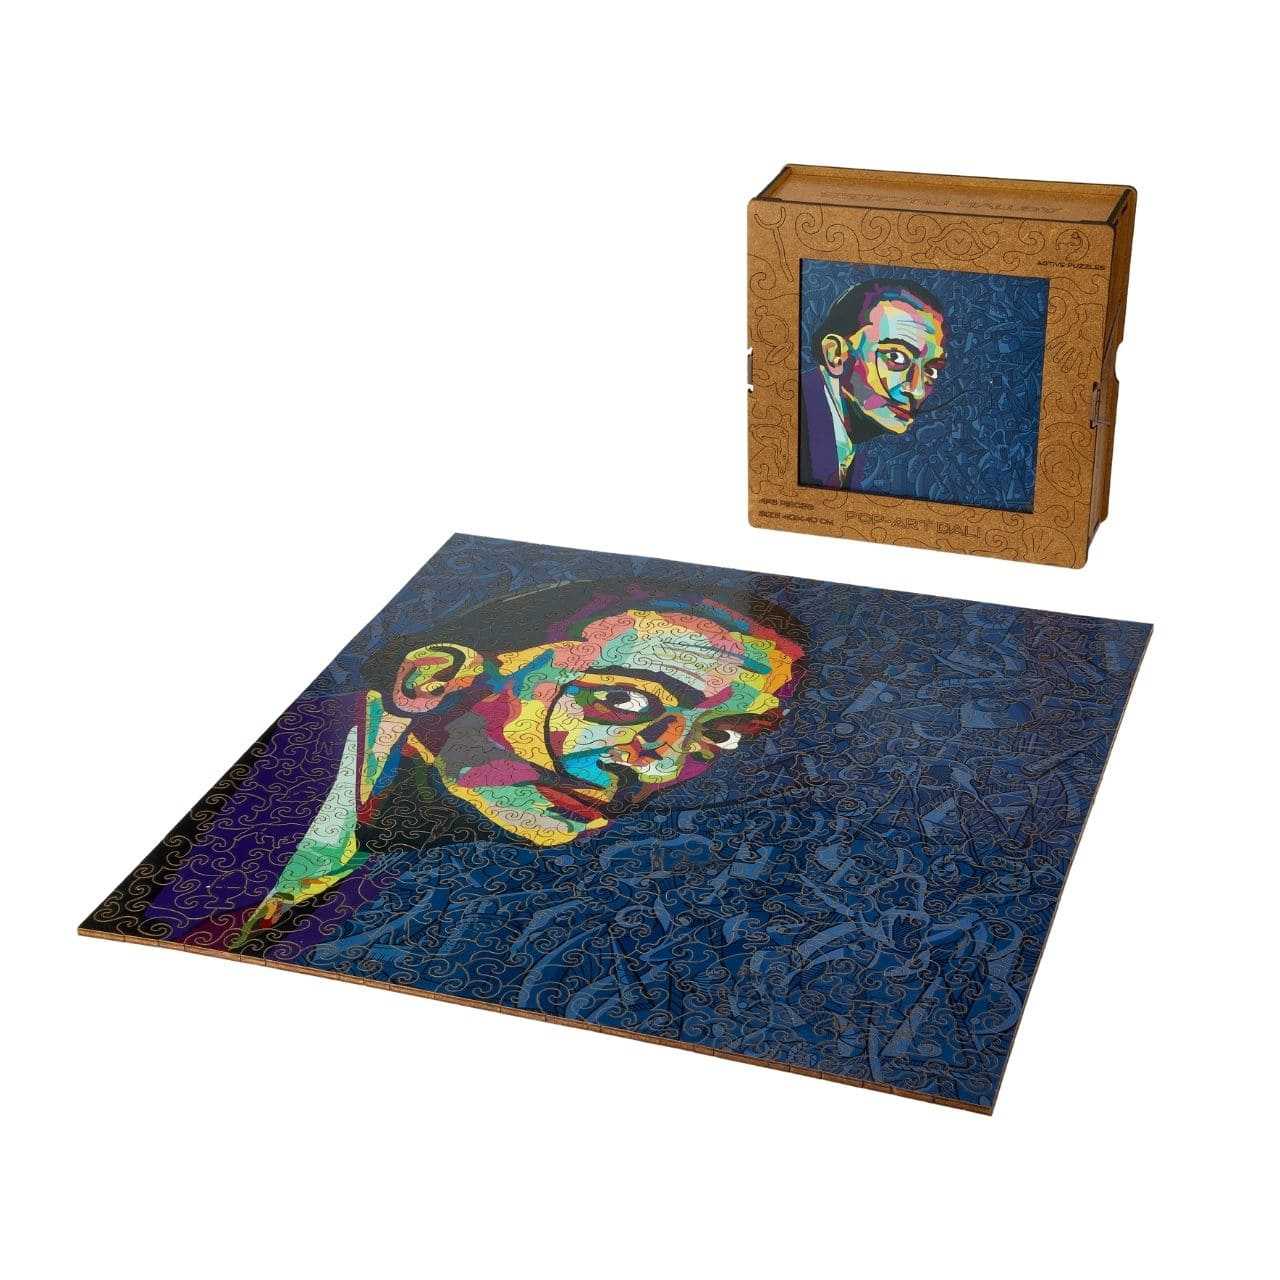 Beautiful Dali Painting And Box